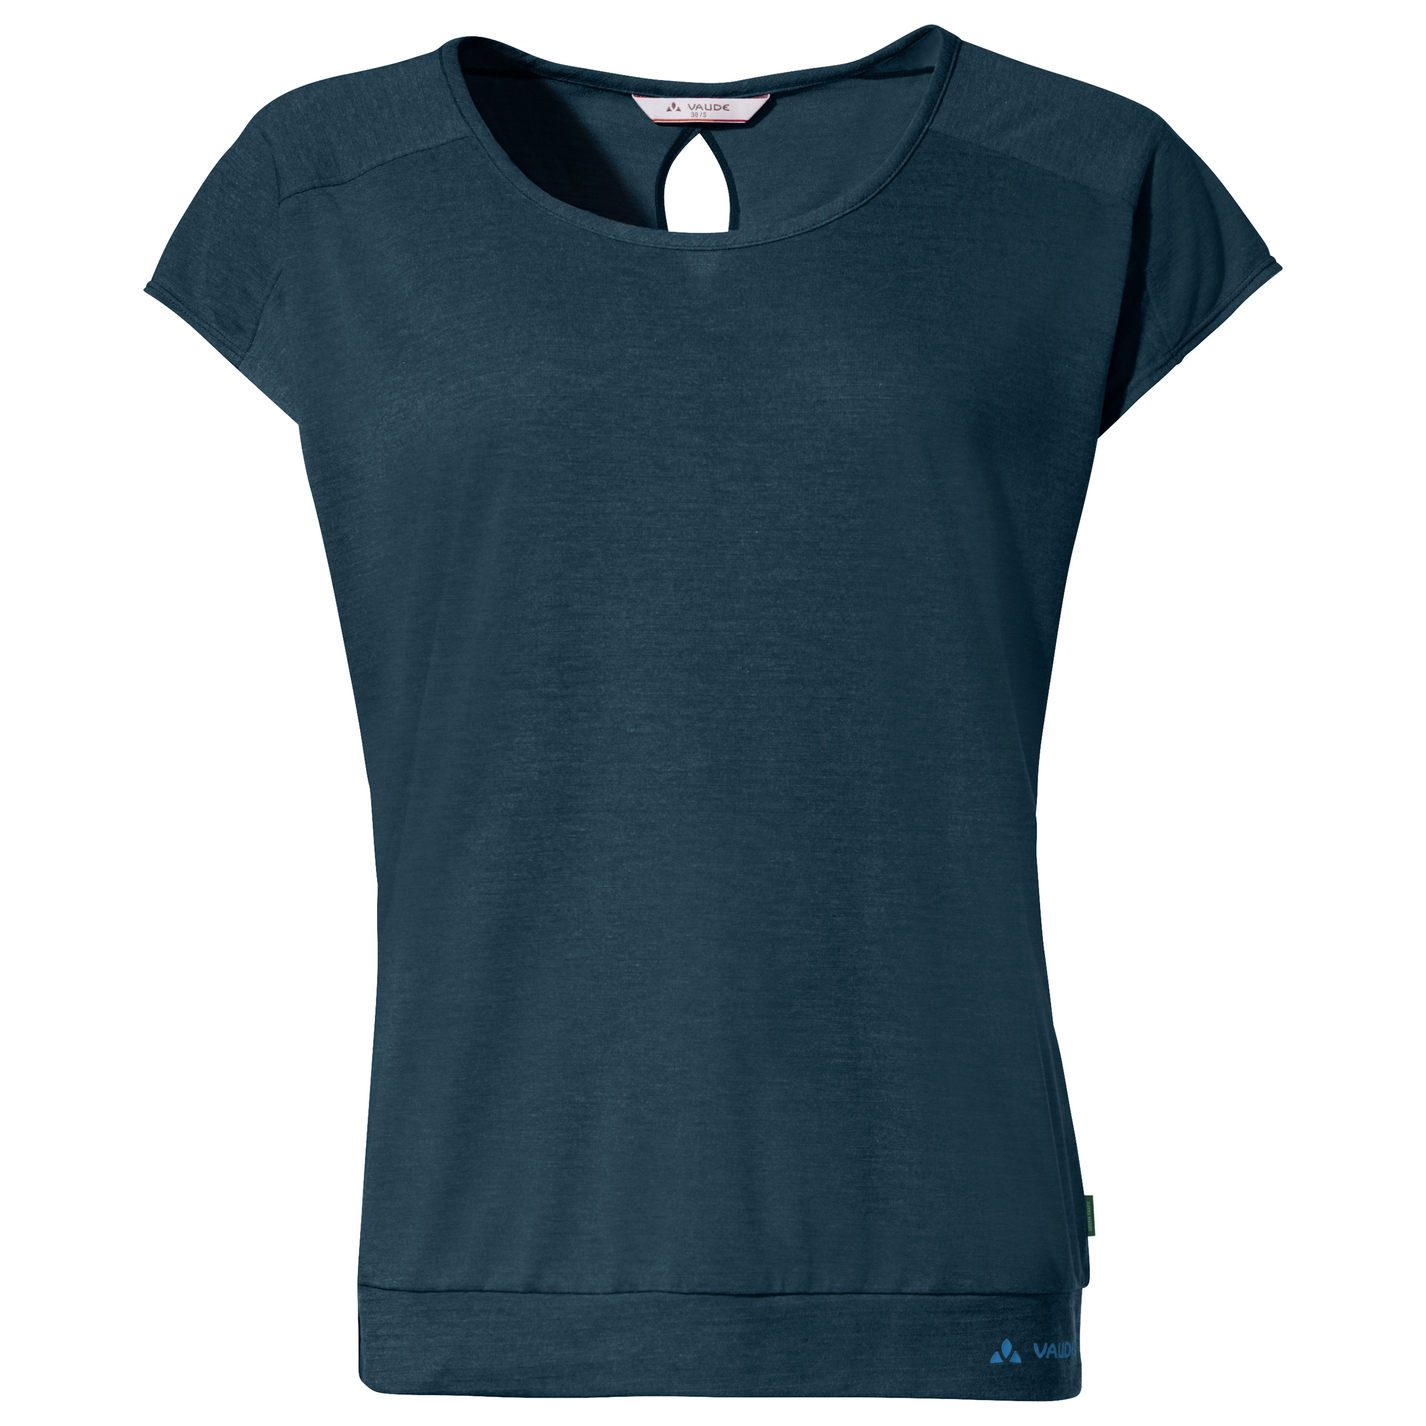 Функциональная рубашка Vaude Women's Skomer T Shirt III, цвет Dark Sea функциональная рубашка vaude tekoa t shirt iii цвет nordic blue